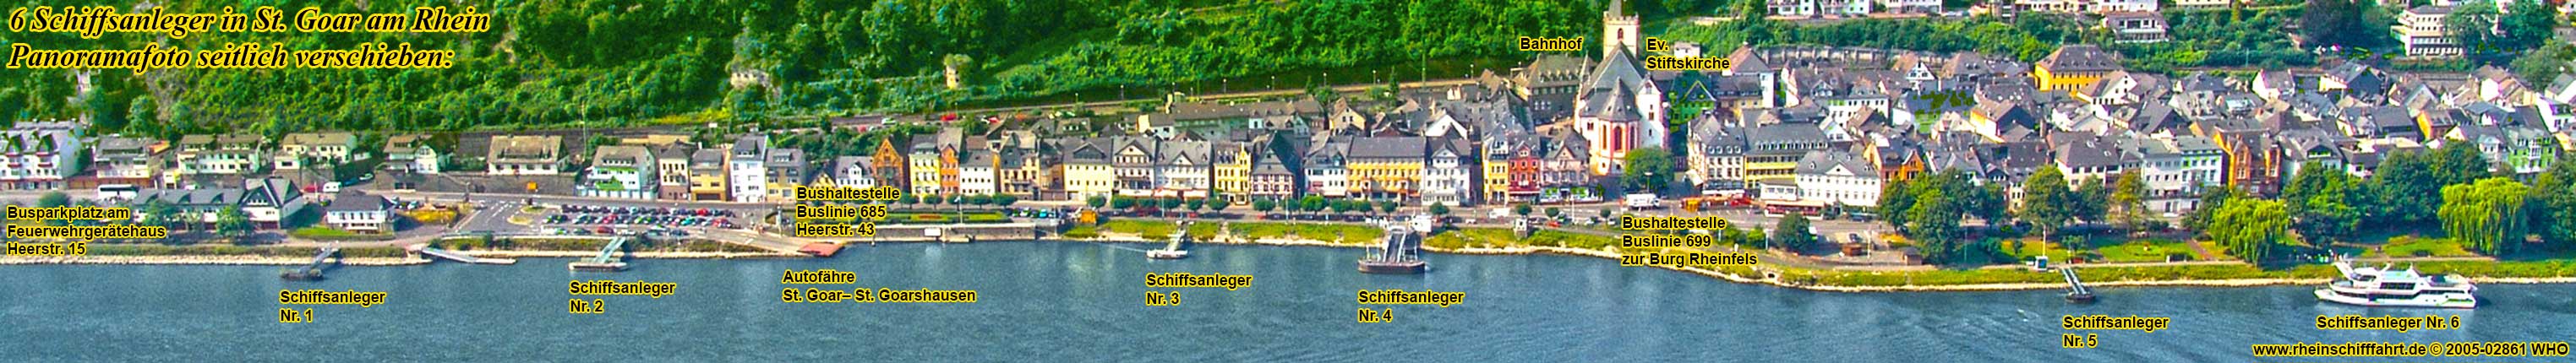 St. Goar am Rhein. Panoramafoto mit 6 Schiffsanlegern.